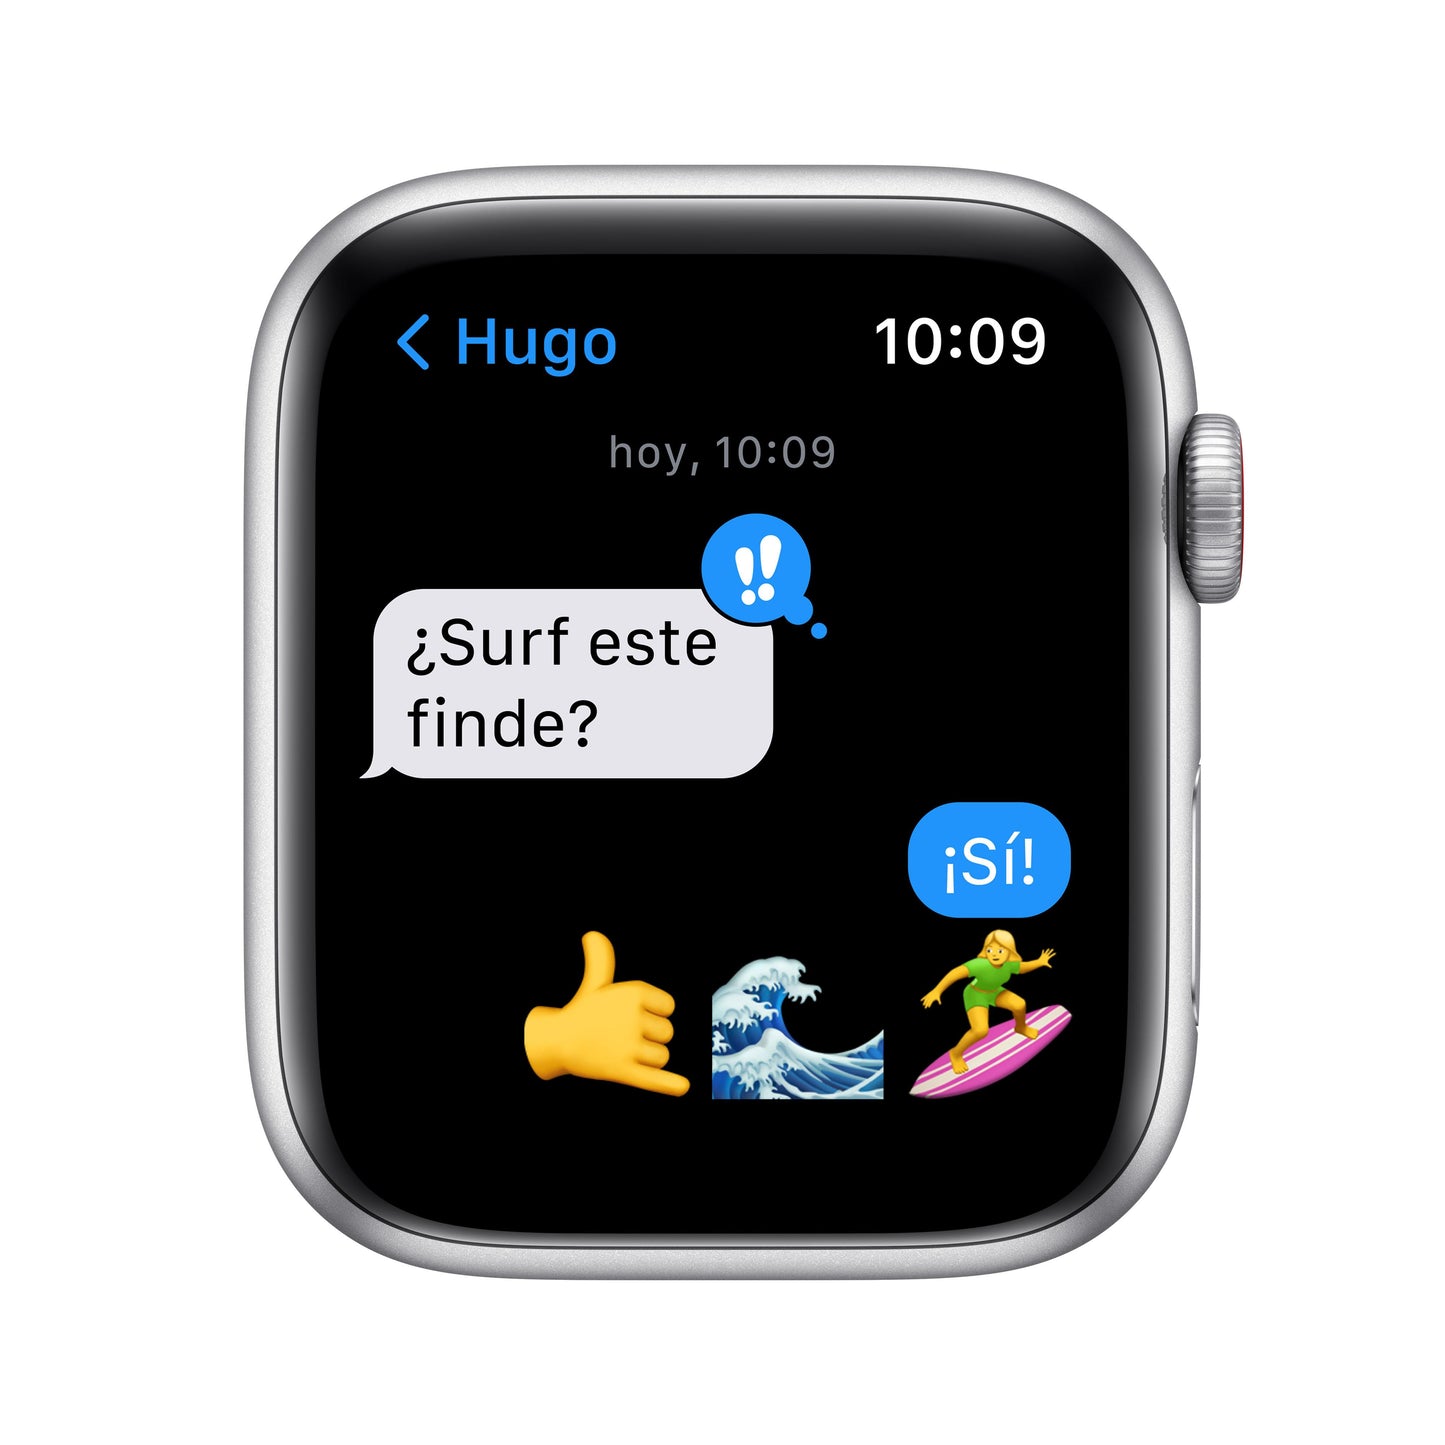 Apple Watch SE (GPS + Cellular) - Caja de aluminio en plata de 44 mm - Correa deportiva en color abismo - Talla única